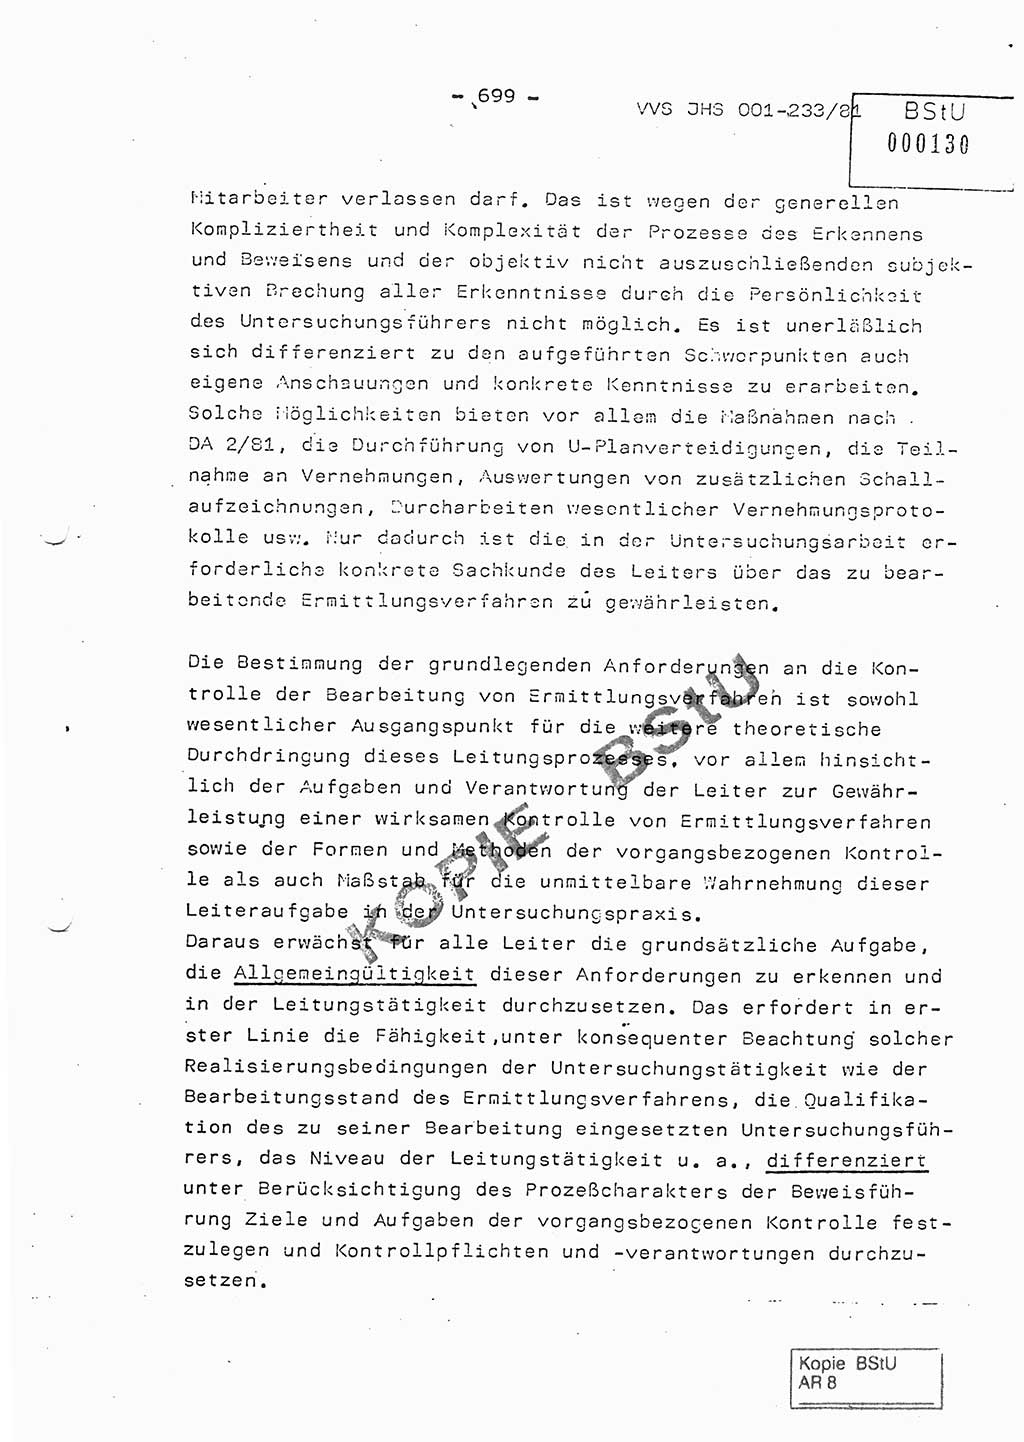 Dissertation Oberstleutnant Horst Zank (JHS), Oberstleutnant Dr. Karl-Heinz Knoblauch (JHS), Oberstleutnant Gustav-Adolf Kowalewski (HA Ⅸ), Oberstleutnant Wolfgang Plötner (HA Ⅸ), Ministerium für Staatssicherheit (MfS) [Deutsche Demokratische Republik (DDR)], Juristische Hochschule (JHS), Vertrauliche Verschlußsache (VVS) o001-233/81, Potsdam 1981, Blatt 699 (Diss. MfS DDR JHS VVS o001-233/81 1981, Bl. 699)